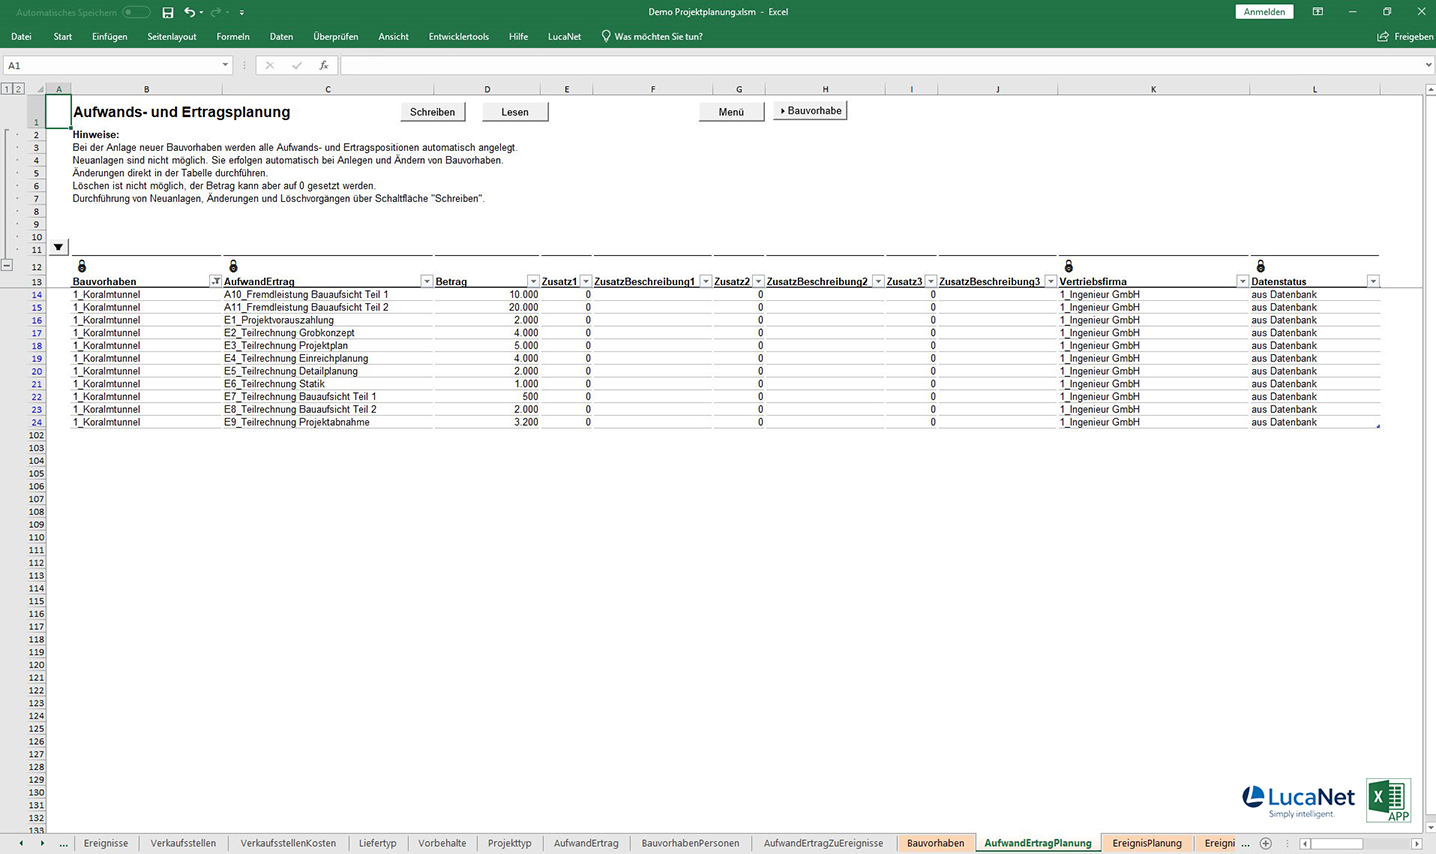 Aufwands- und Ertragsplanung in der Excel APP Projektplanung für LucaNet von consultnetwork